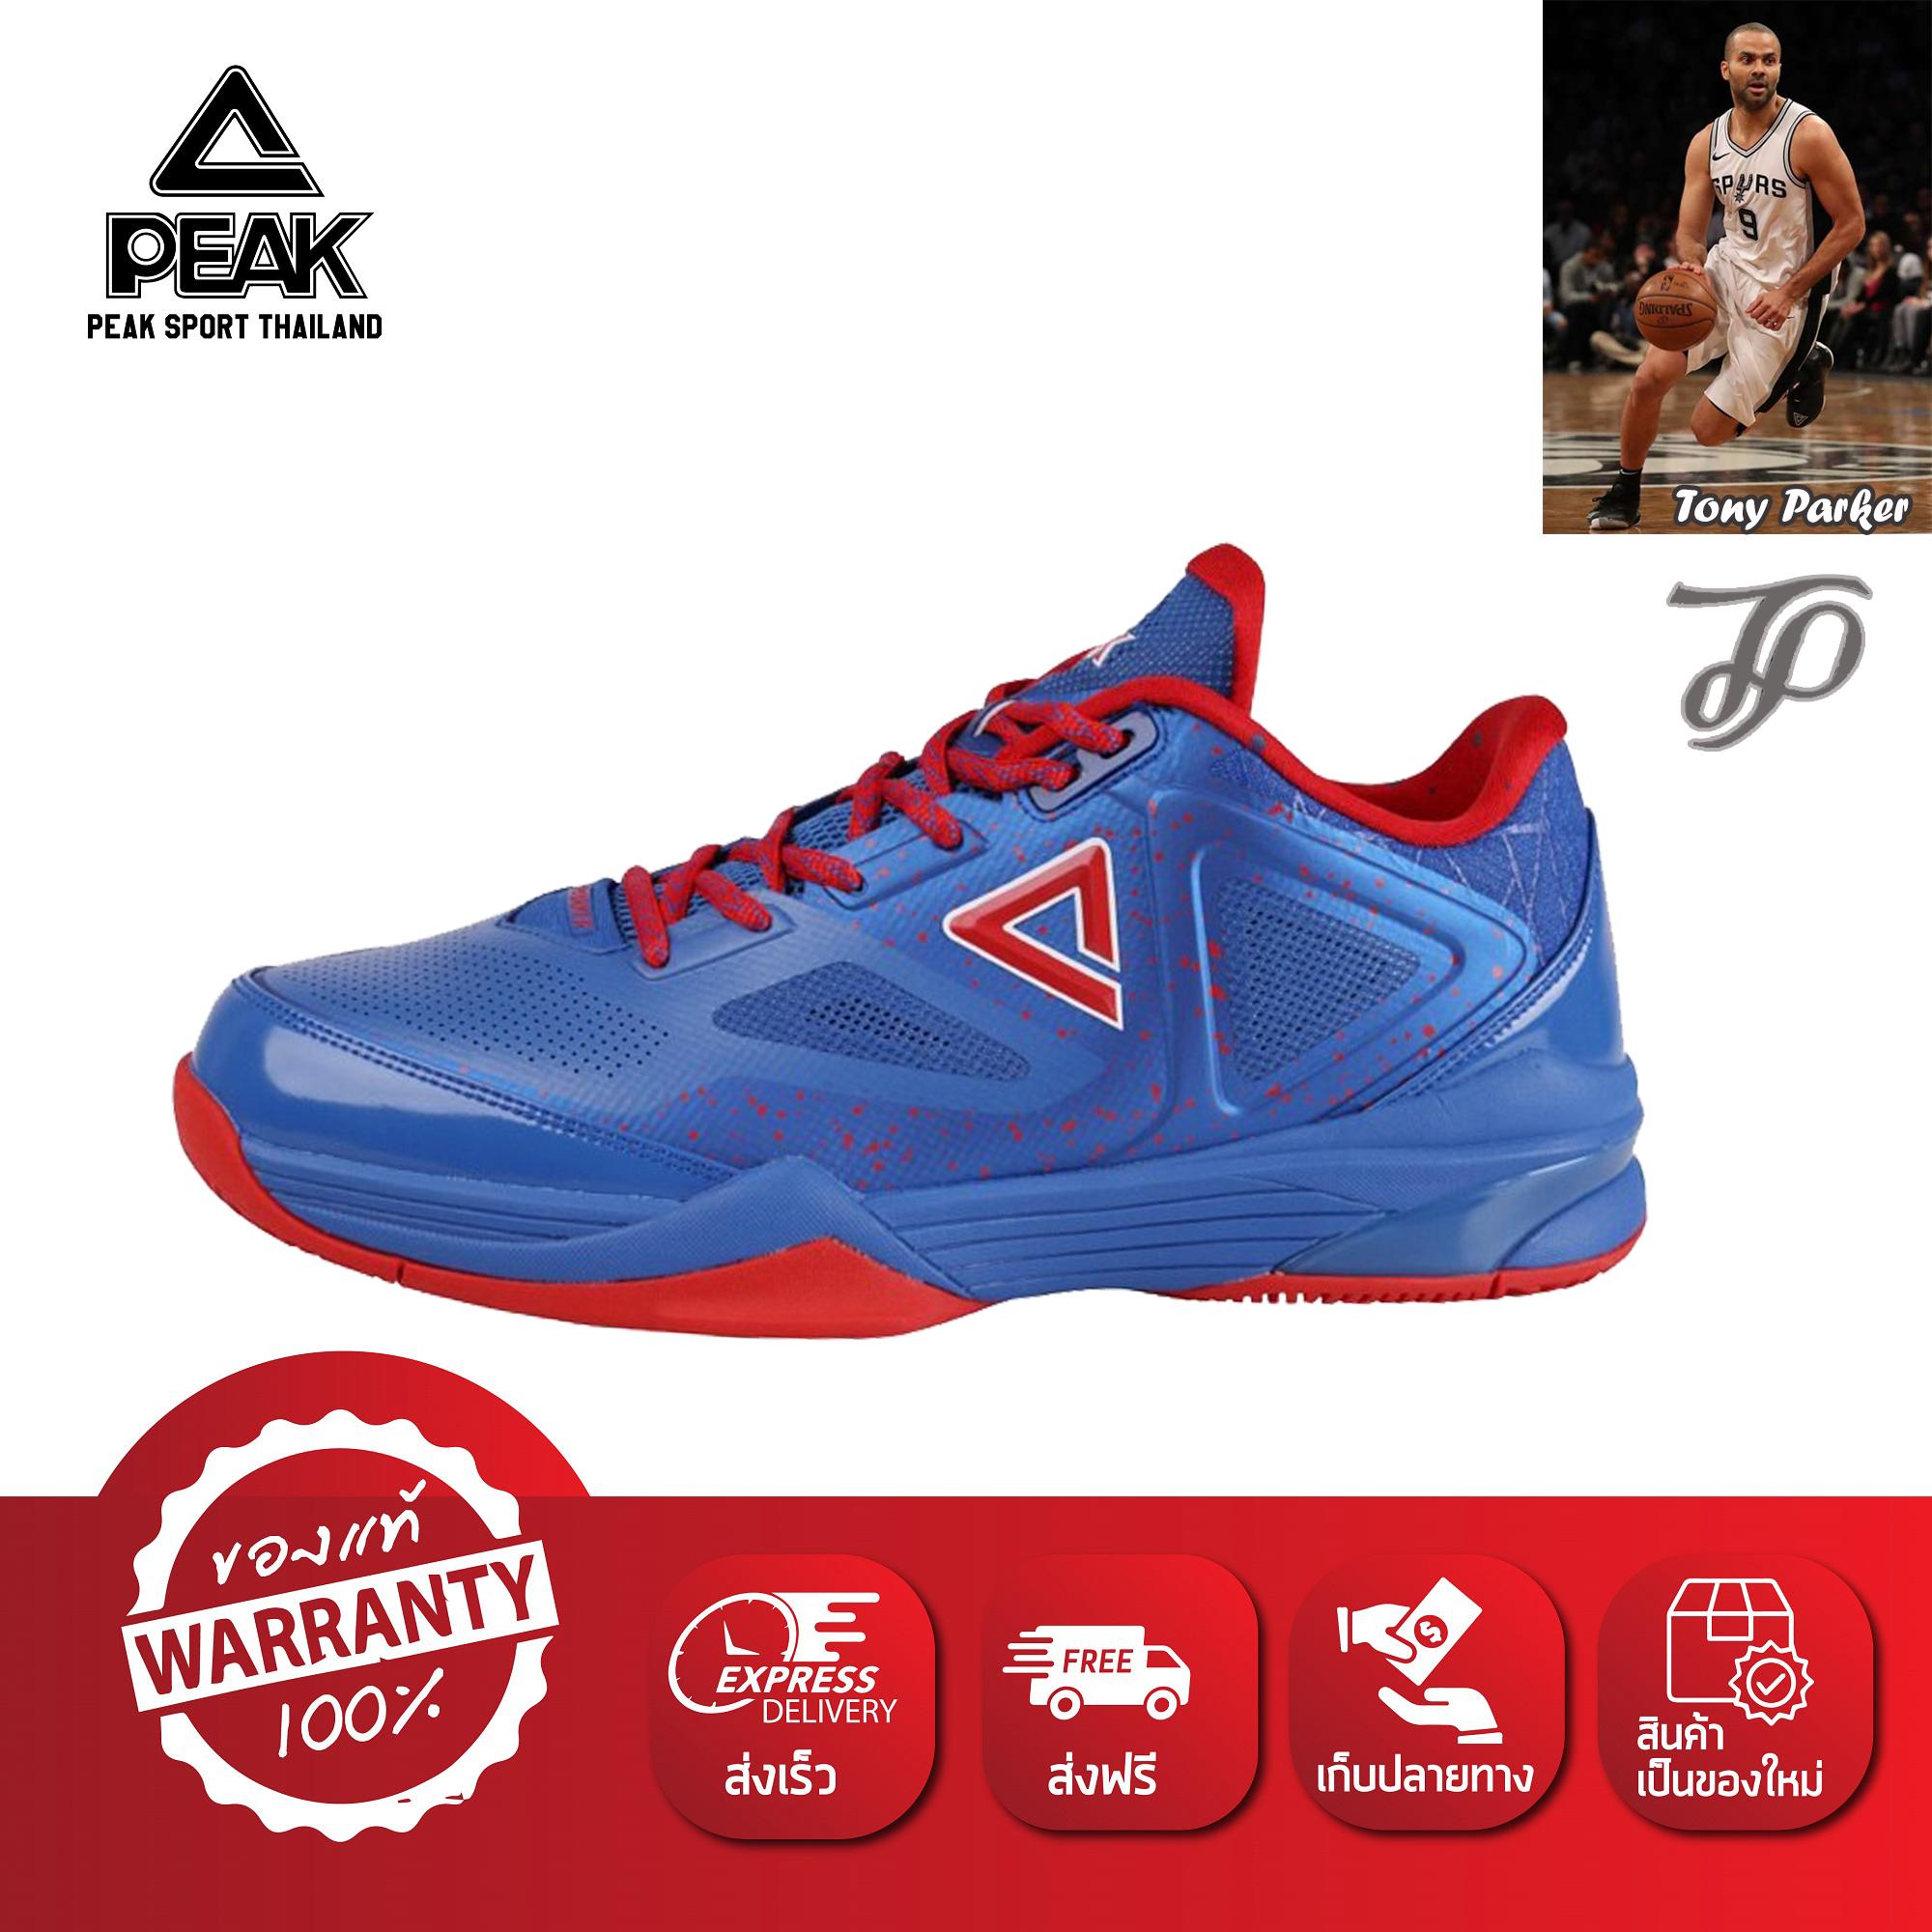 PEAK รองเท้า บาสเกตบอล ใช้แข่งขัน เอ็นบีเอ NBA Basketball shoes TP9-III พีค รุ่น E61323A - Blue สี สีฟ้า สี สีฟ้า